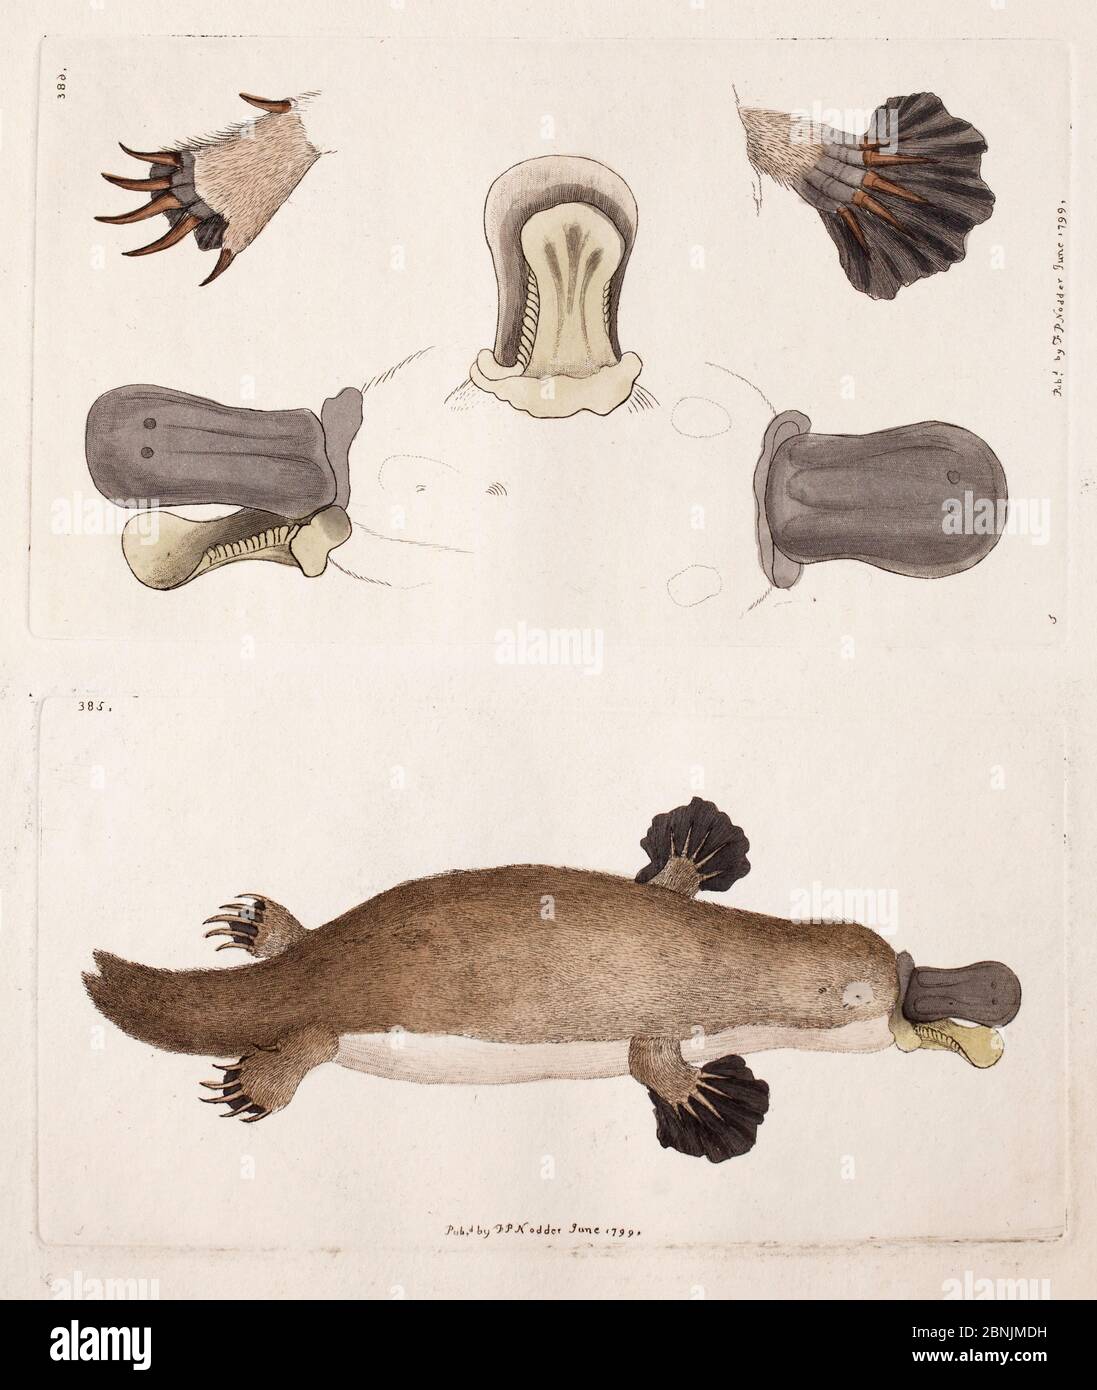 Illustrazione di piastre di anatra bocciato platypus (Ornithorhynchus anatinus) compresa l'anatomia di piedi e di legge, da Frederick Nodder da George Shaw, 'il Foto Stock